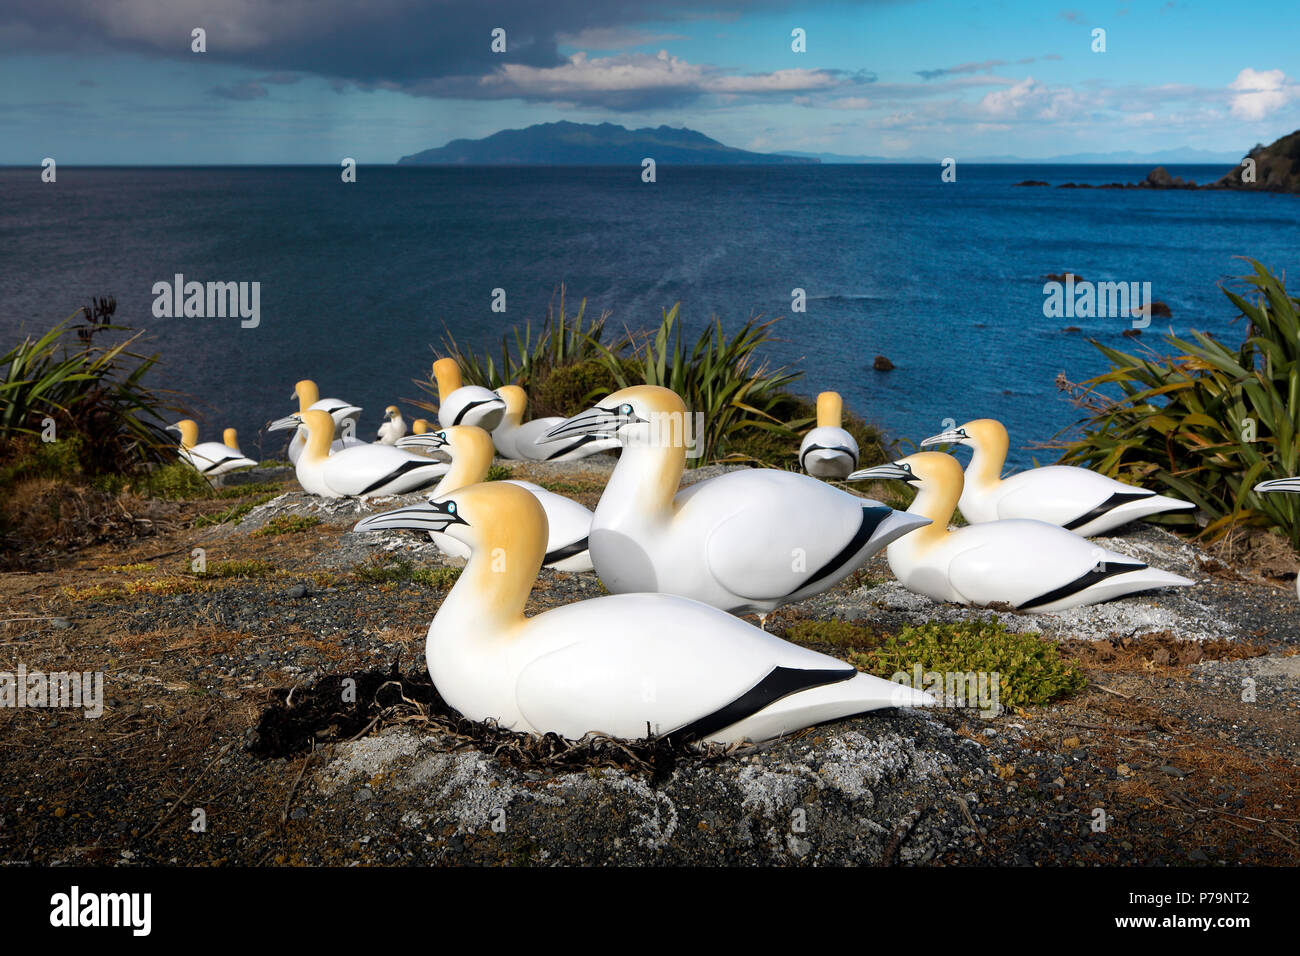 Los señuelos de gannet australasianos solían intentar formar una nueva colonia en el Parque Regional de Tawharanui, Nueva Zelanda Foto de stock